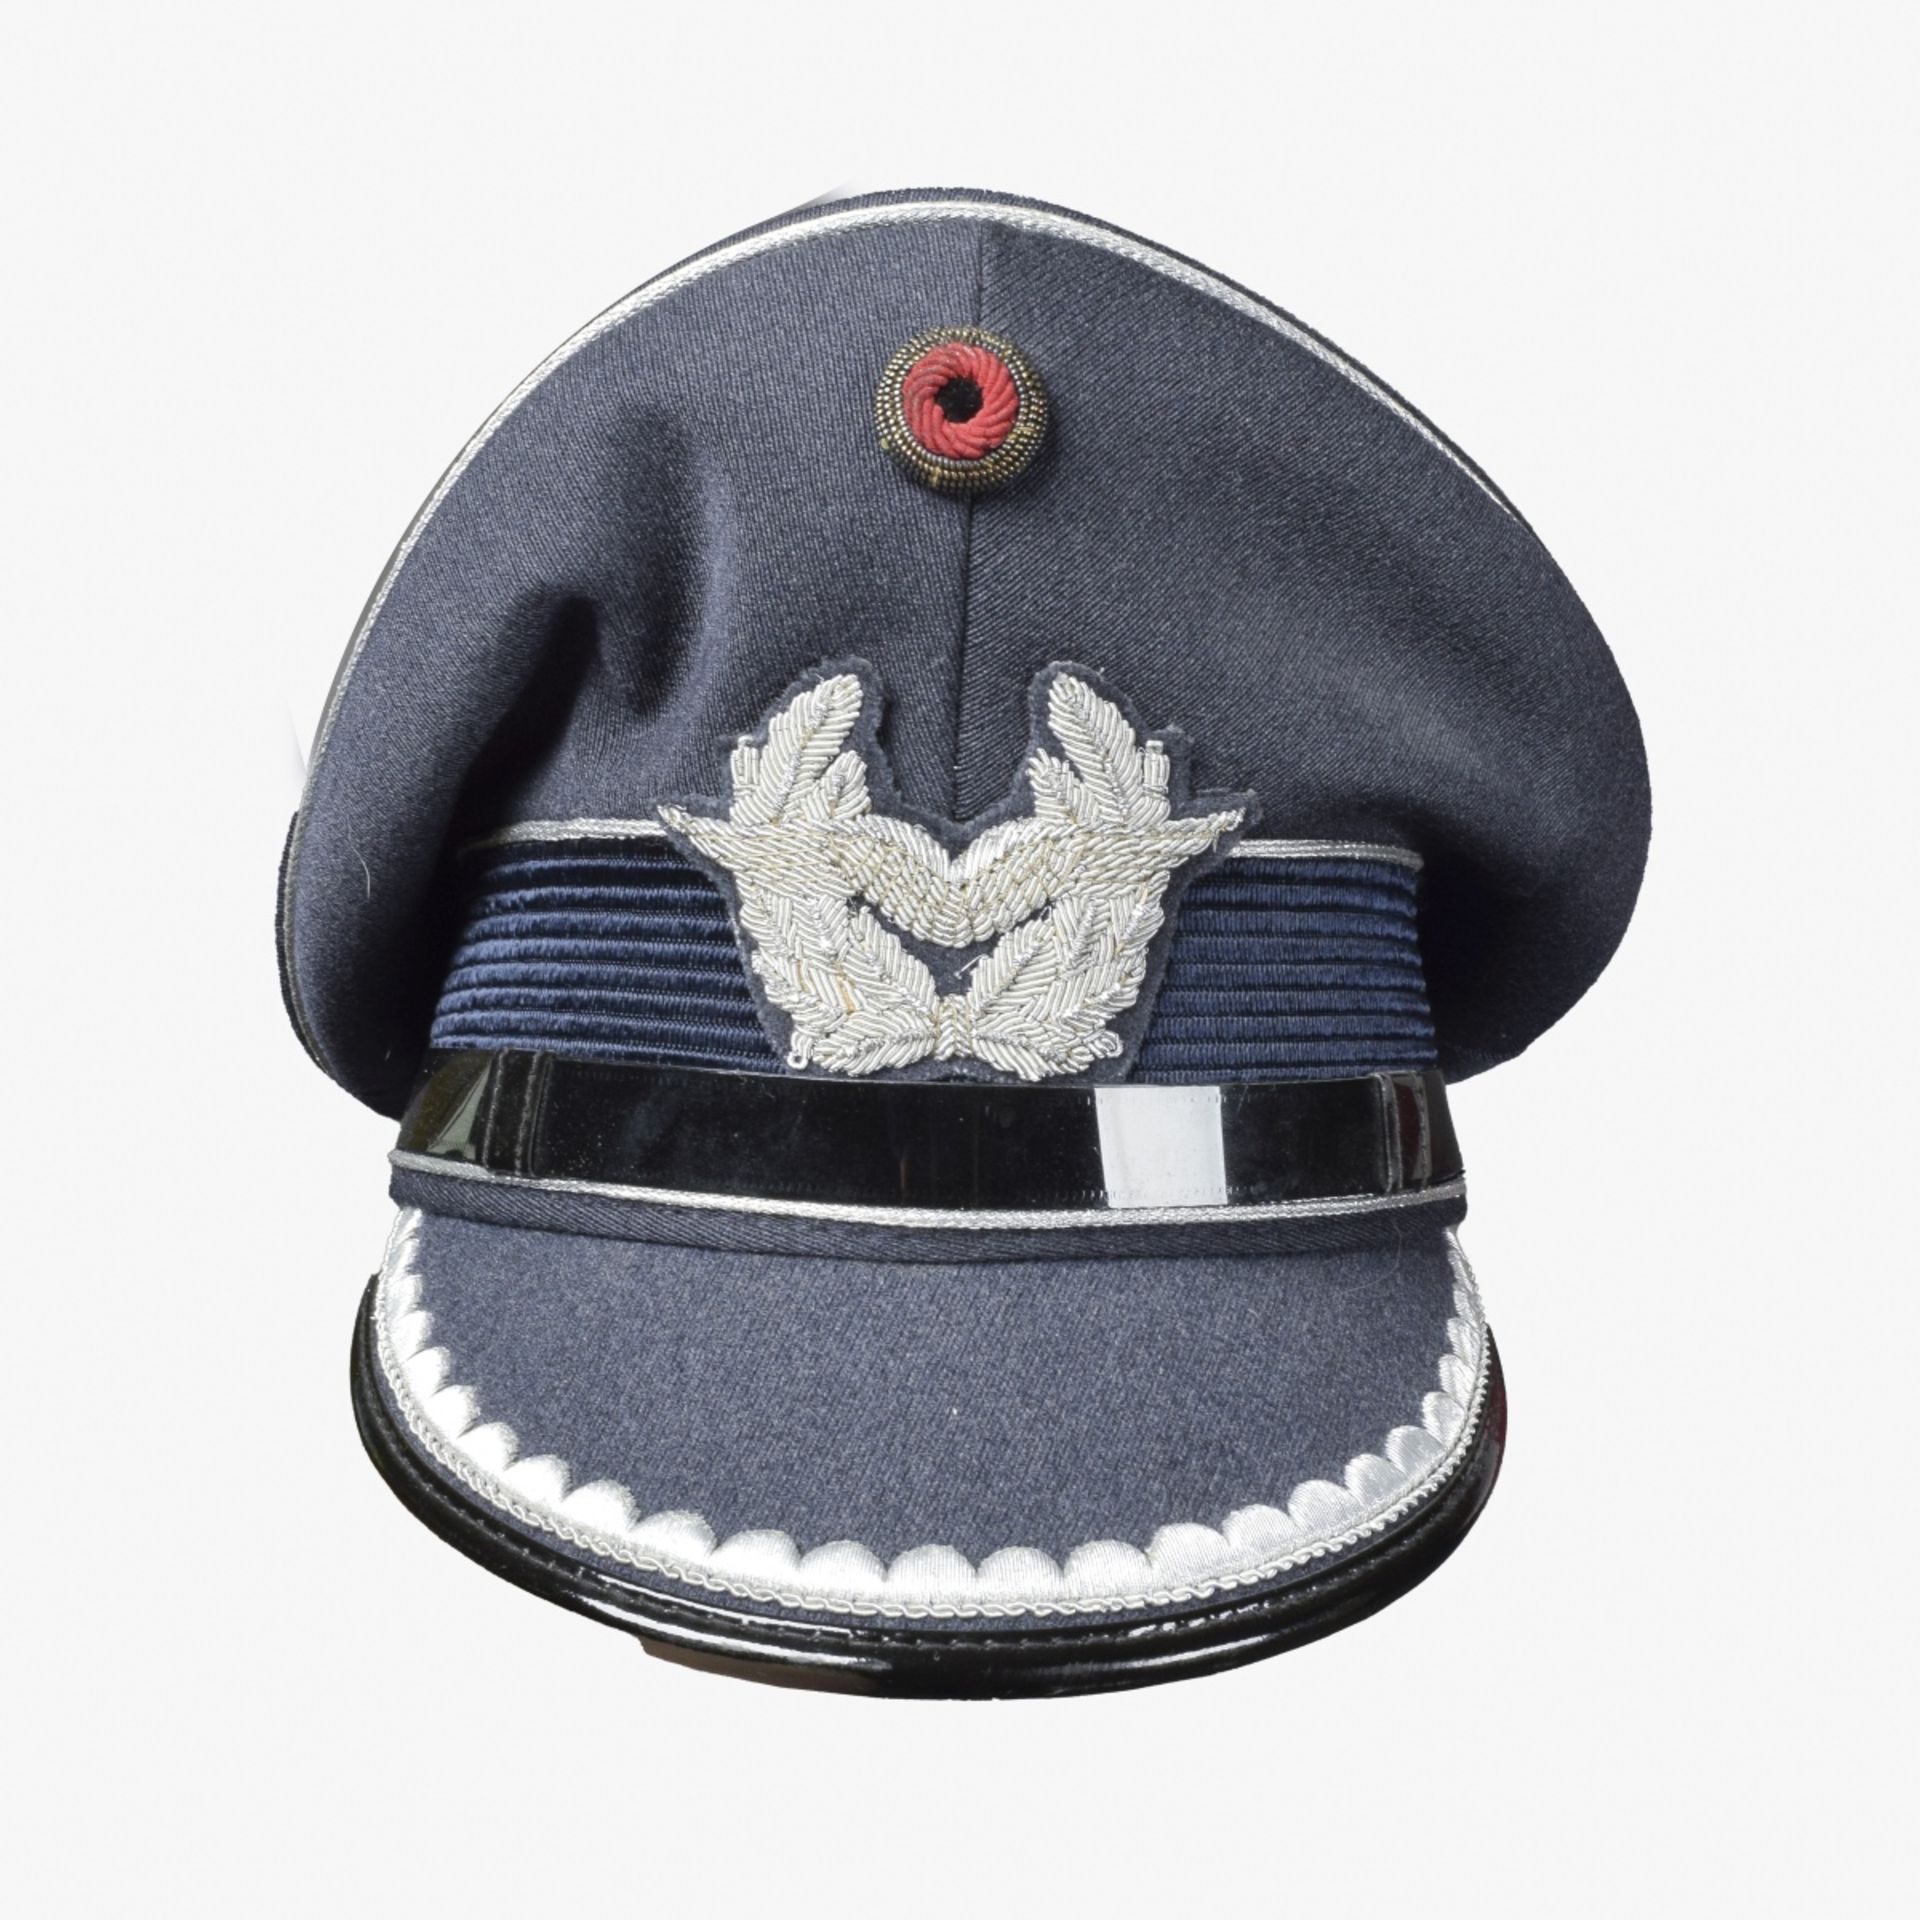 Uniform Luftwaffe DDR - Image 2 of 6